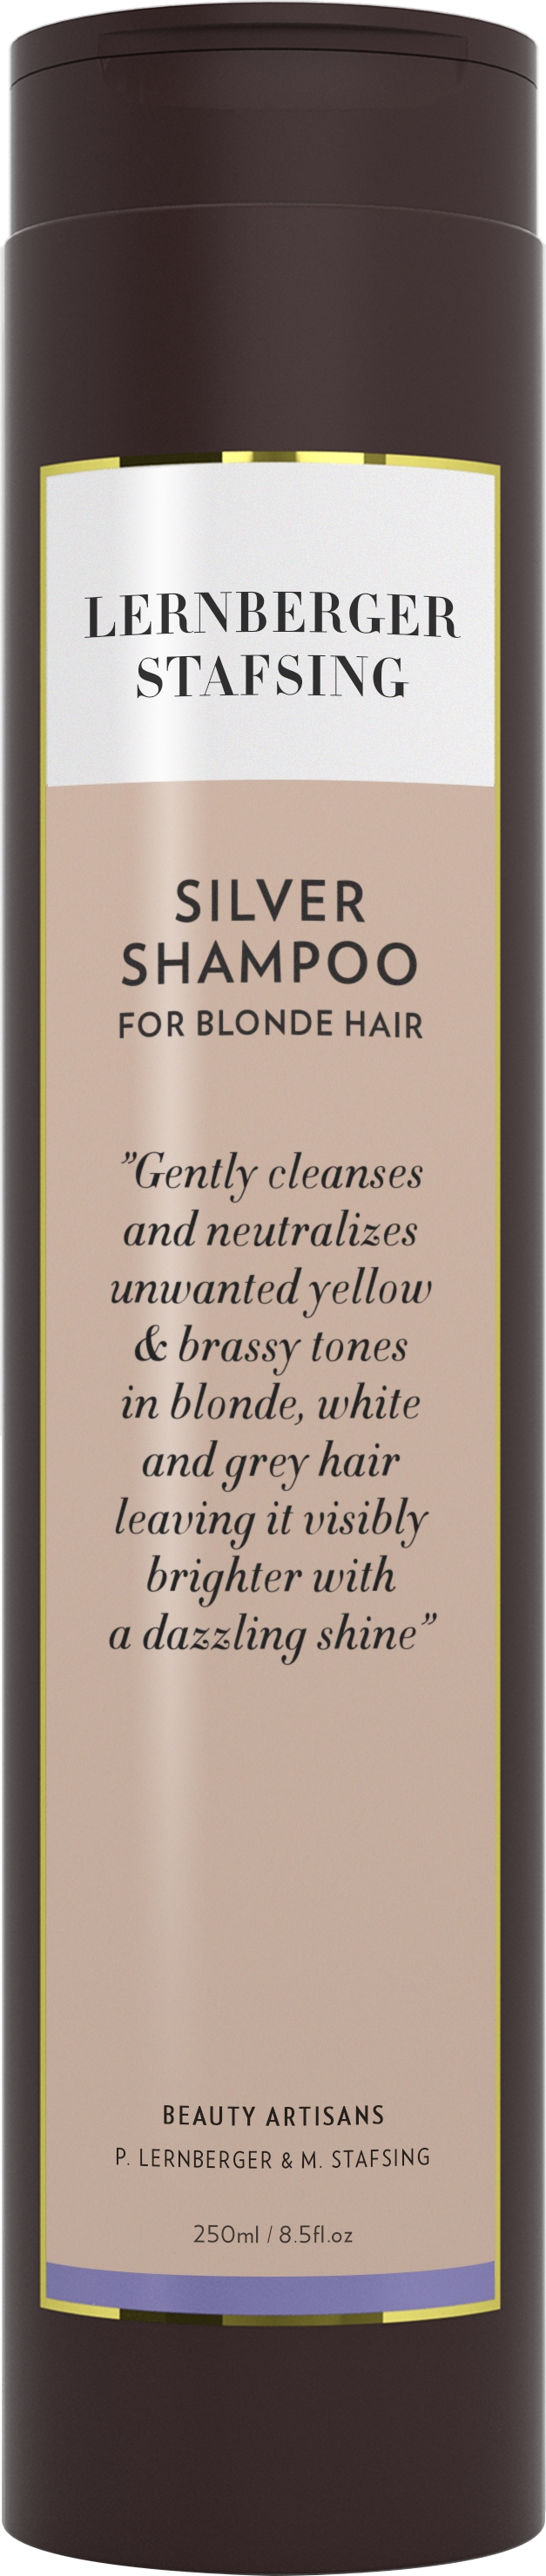  For Blonde Hair Silver Shampoo